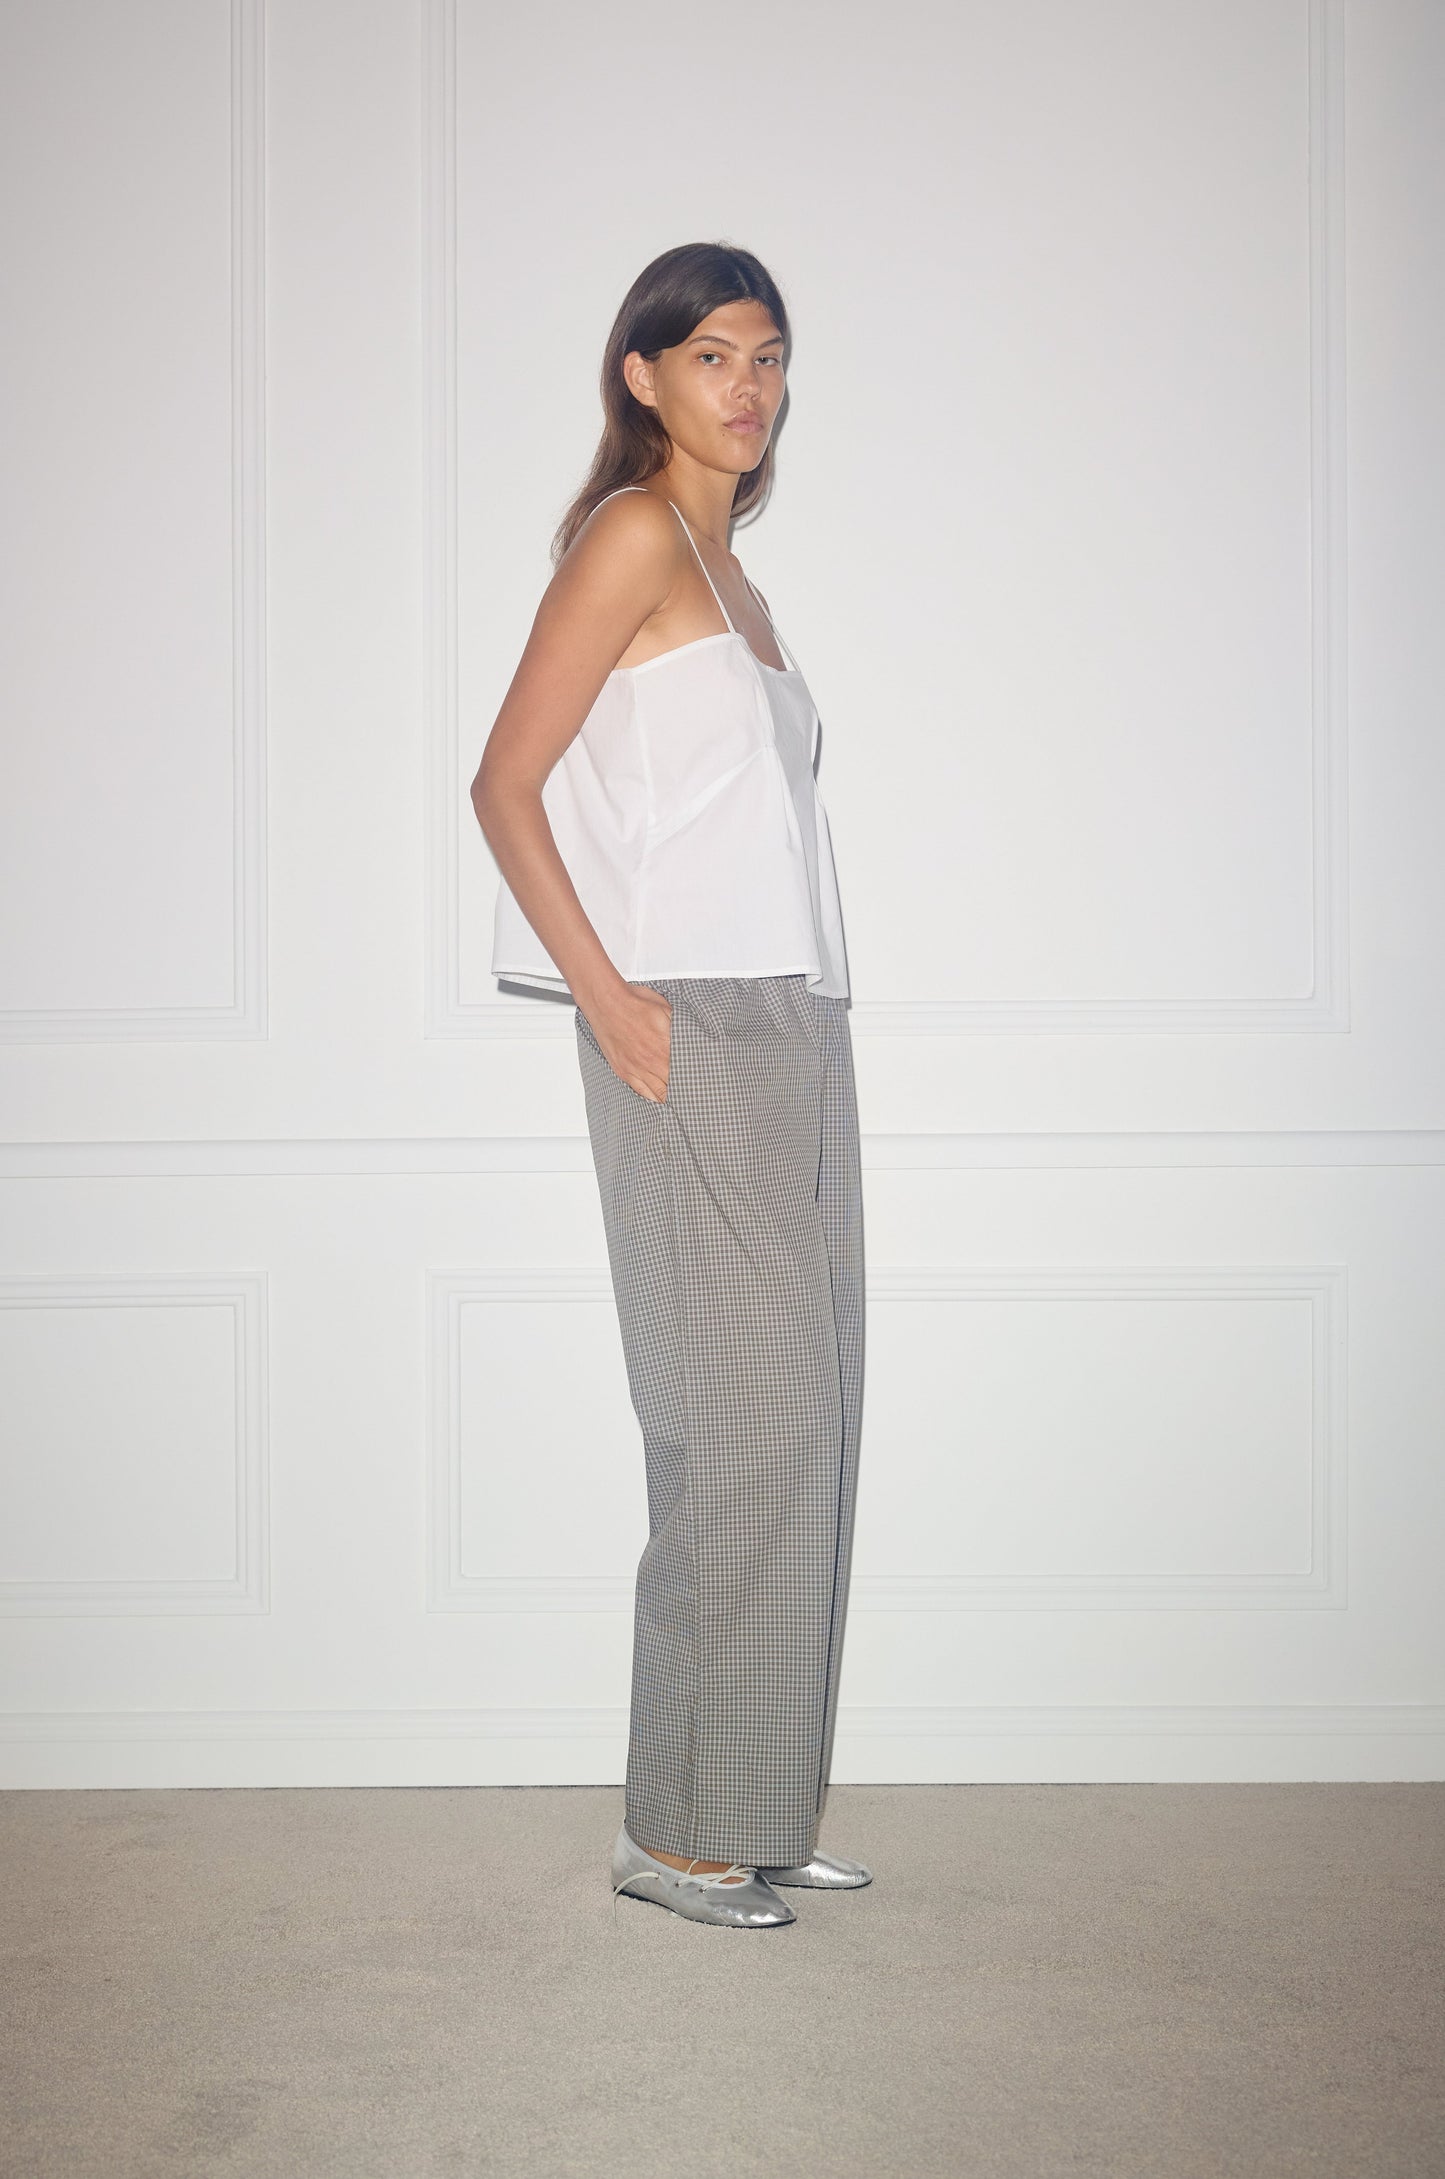 Female model wearing Ease Trouser - Khaki Check by Deiji Studios against plain background